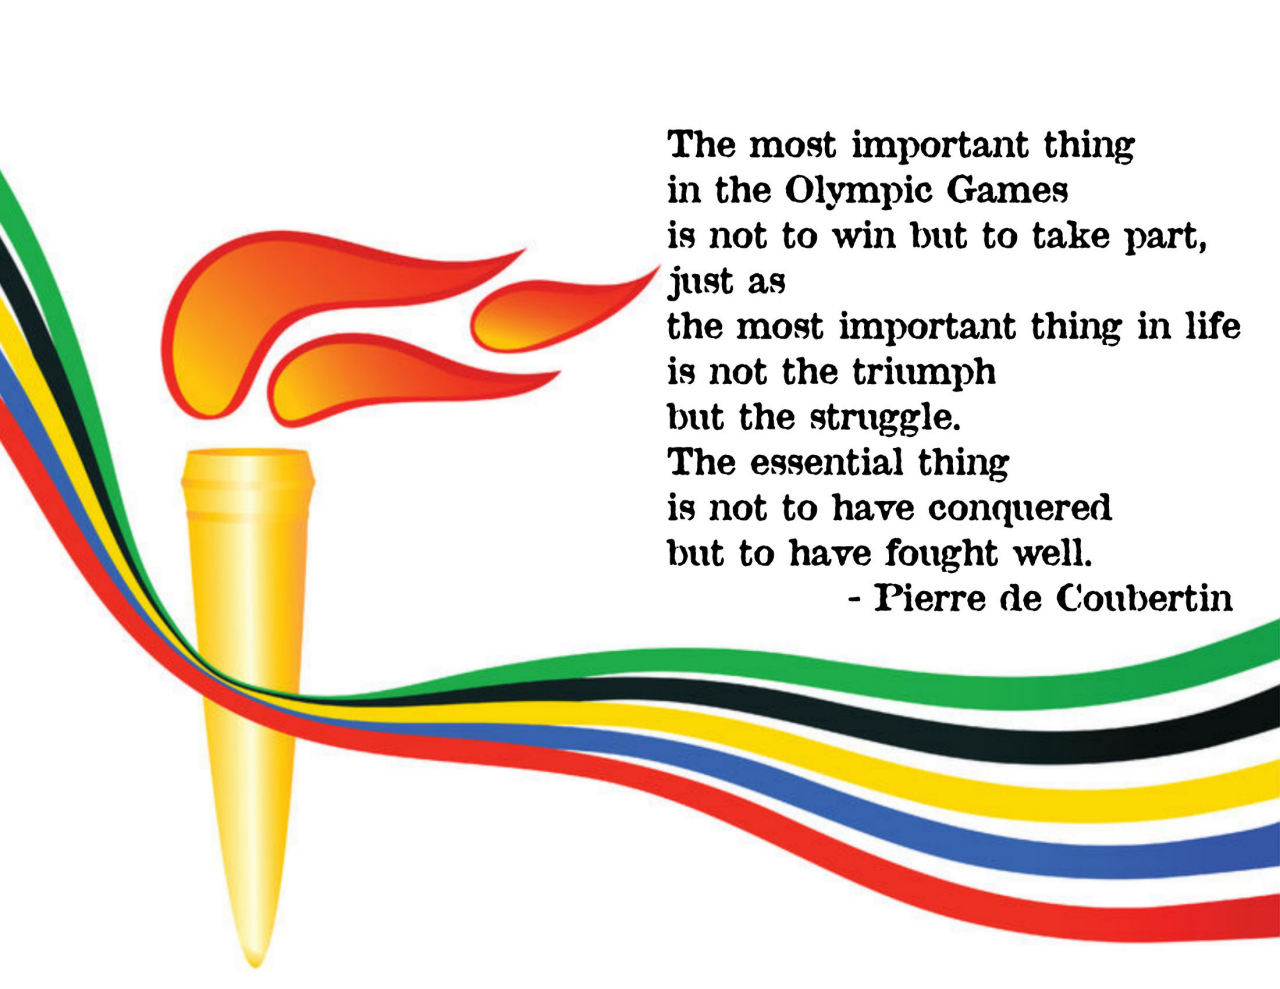 Pierre de Coubertin's quote